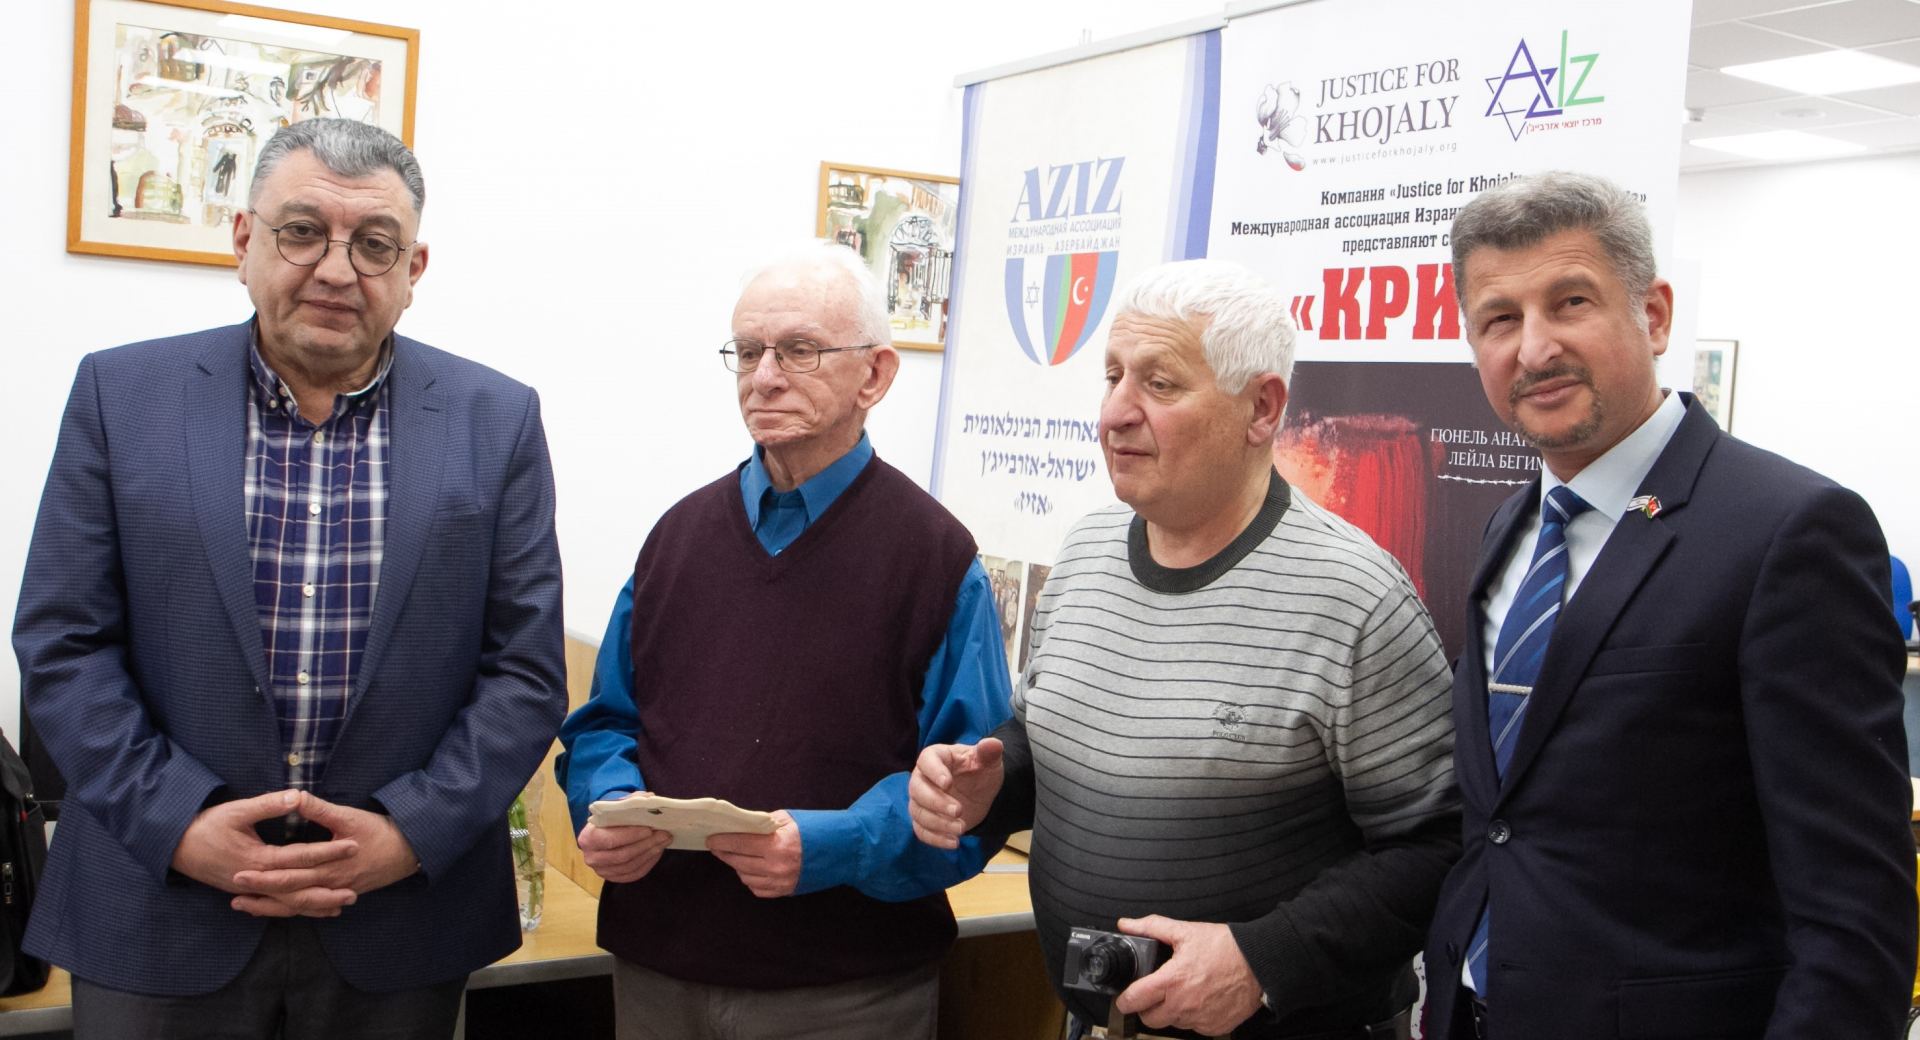 Международной ассоциацией "АзИз" к 28-ой годовщине Ходжалинской трагедии выпущен сборник "Крик"